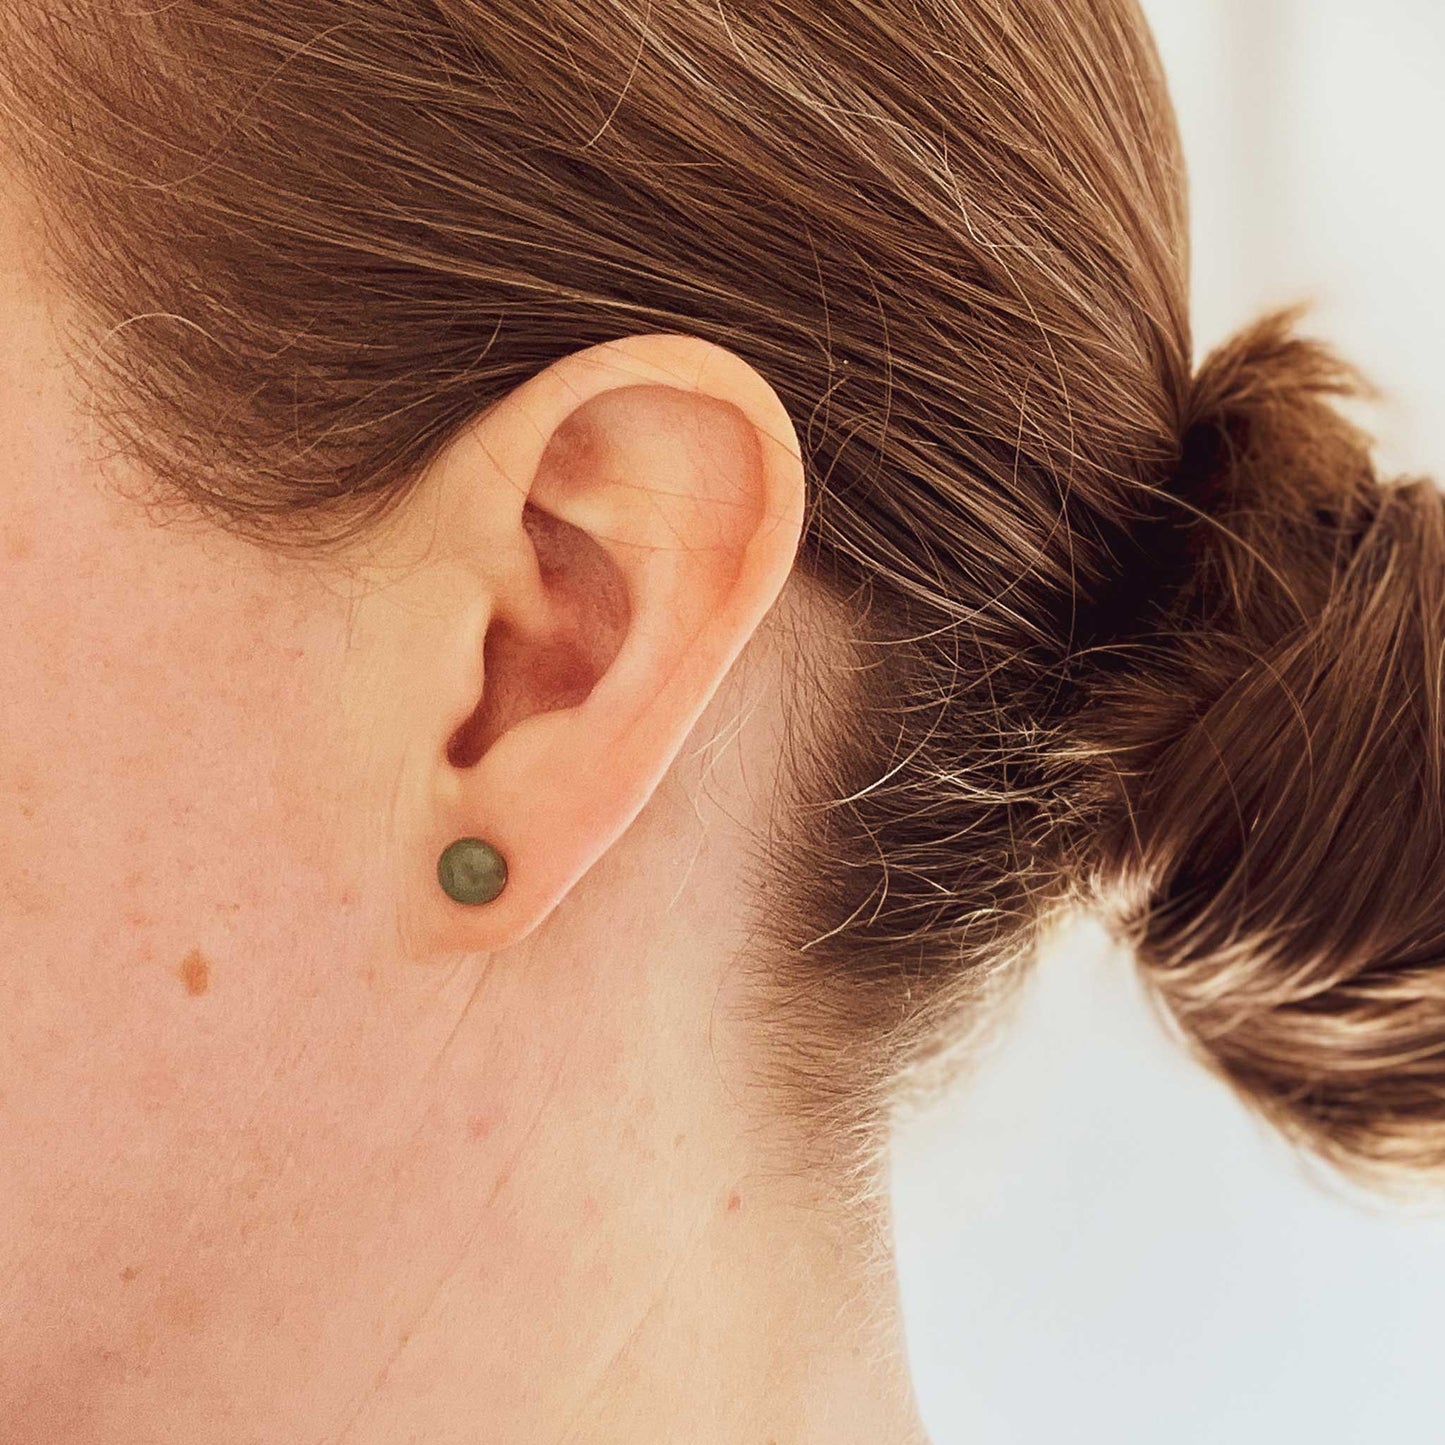 Woman wearing Green Aventurine earring stud in earlobe